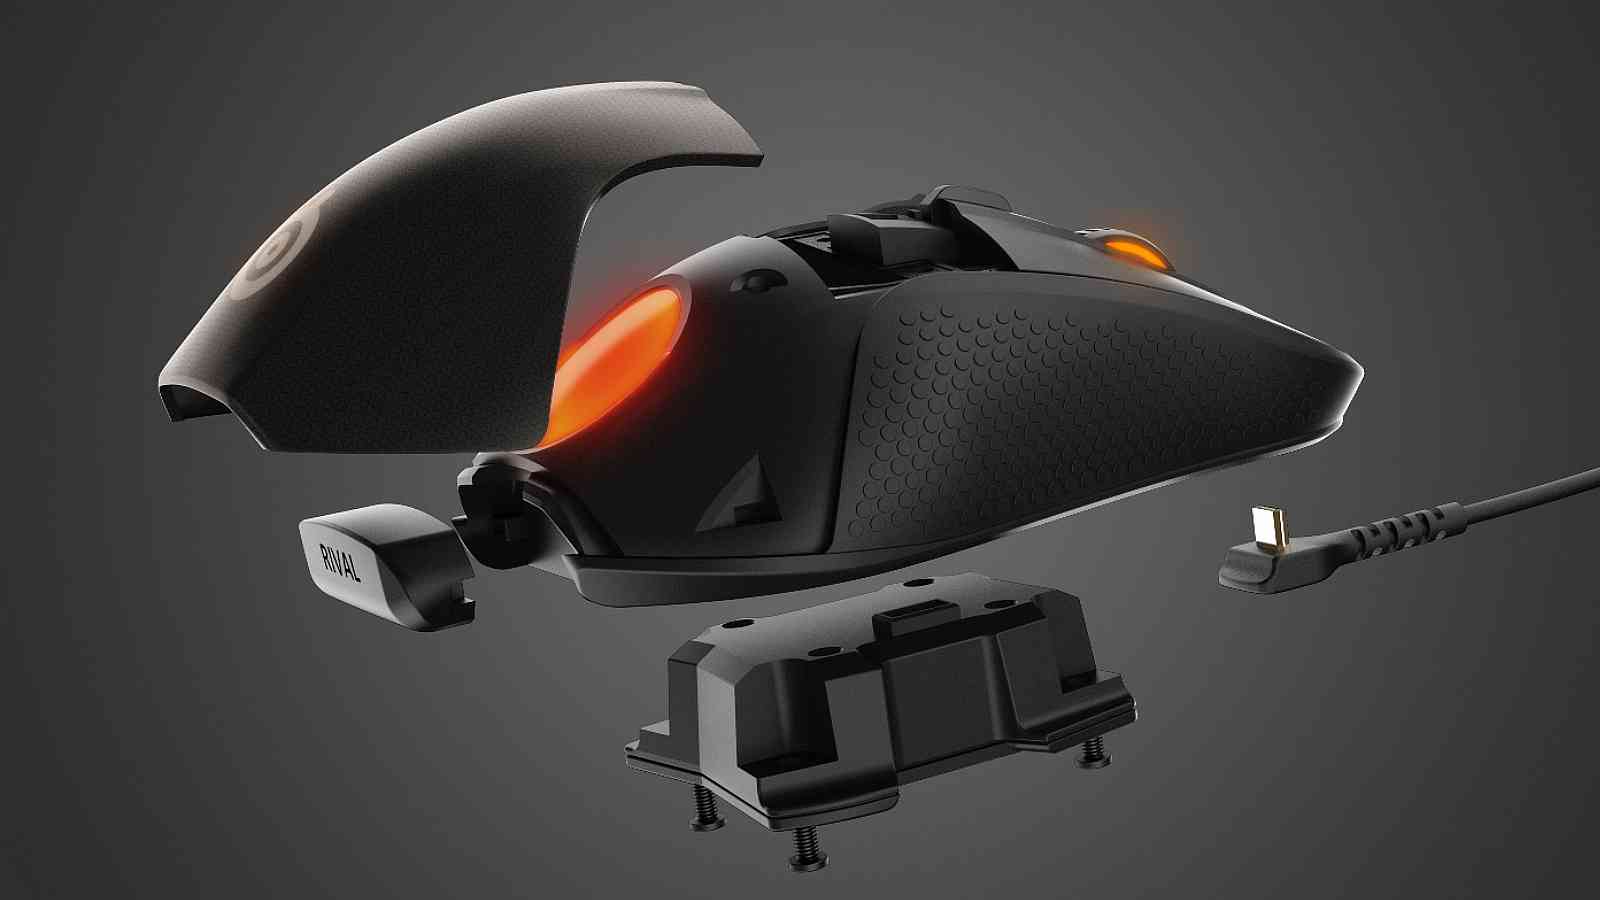 Recenze: SteelSeries Rival 700 – myš, která má displej, vibrace a vyměnitelné části